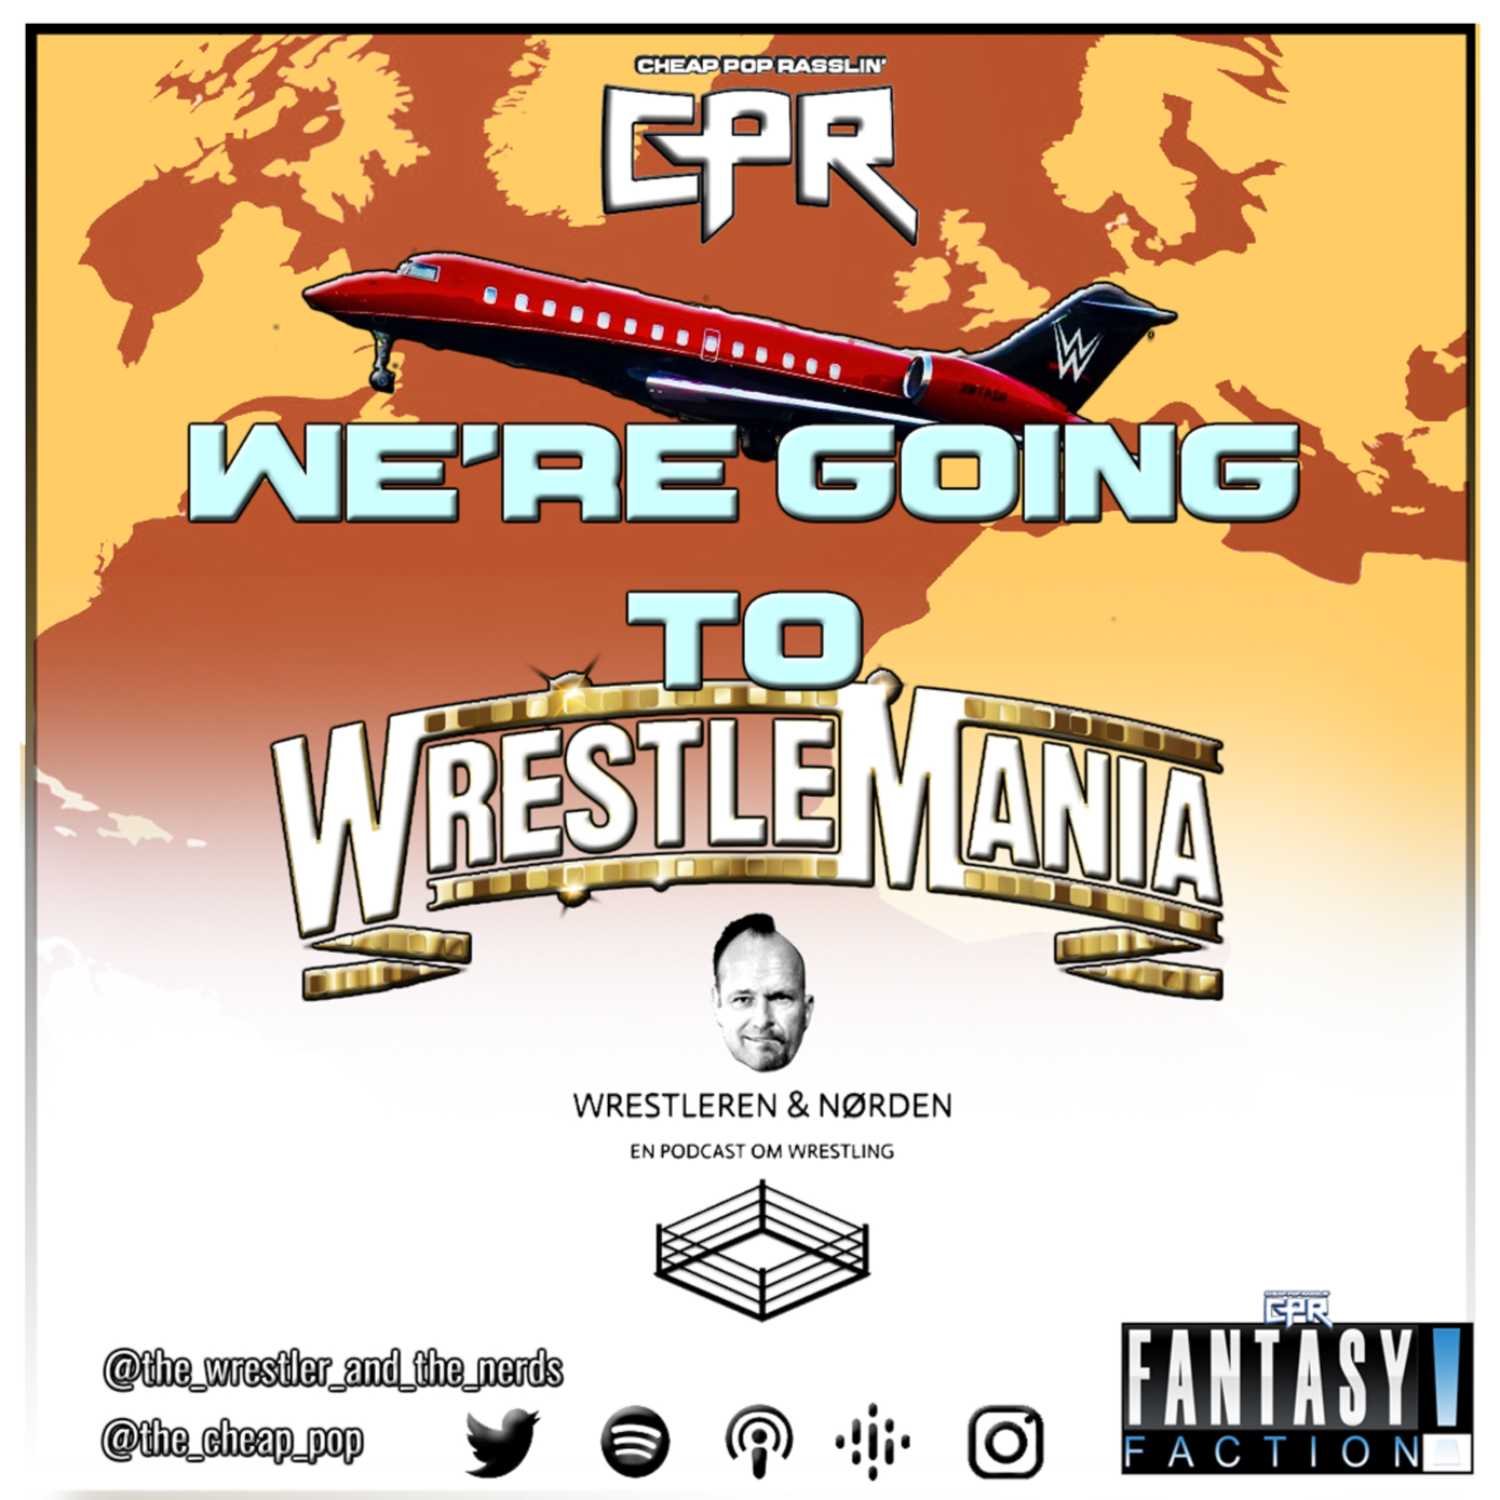 We're Going To Wrestlemania! (featuring The Wrestler & The Nerd Podcast / Wrestleren og Norden)